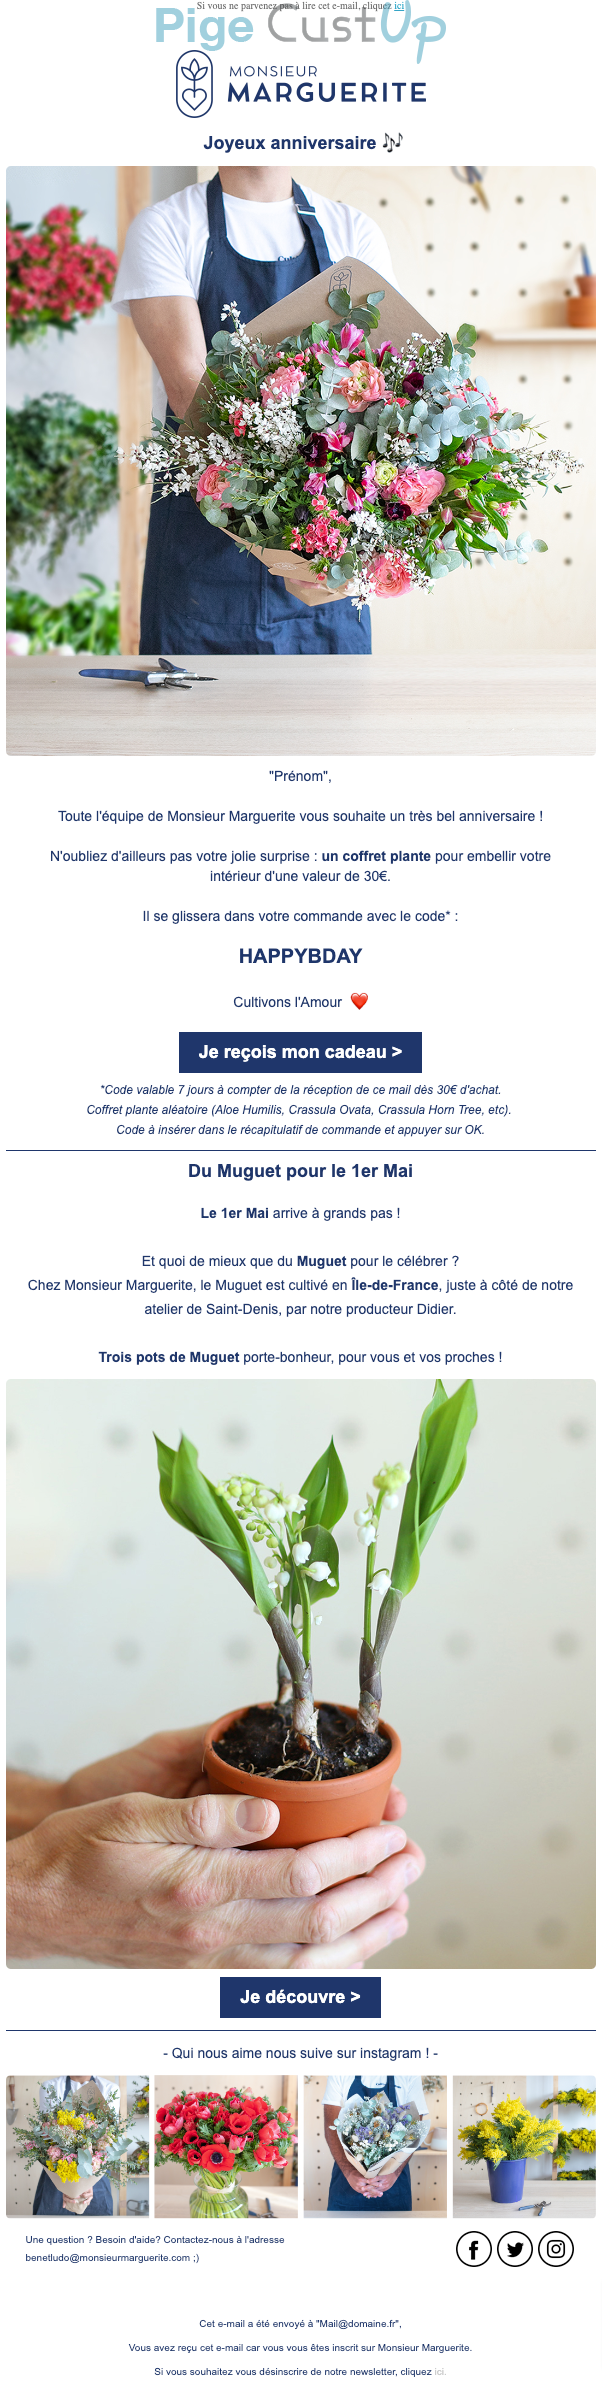 Exemple de Type de media  e-mailing - Monsieur Marguerite - Marketing relationnel - Anniversaire / Fête contact